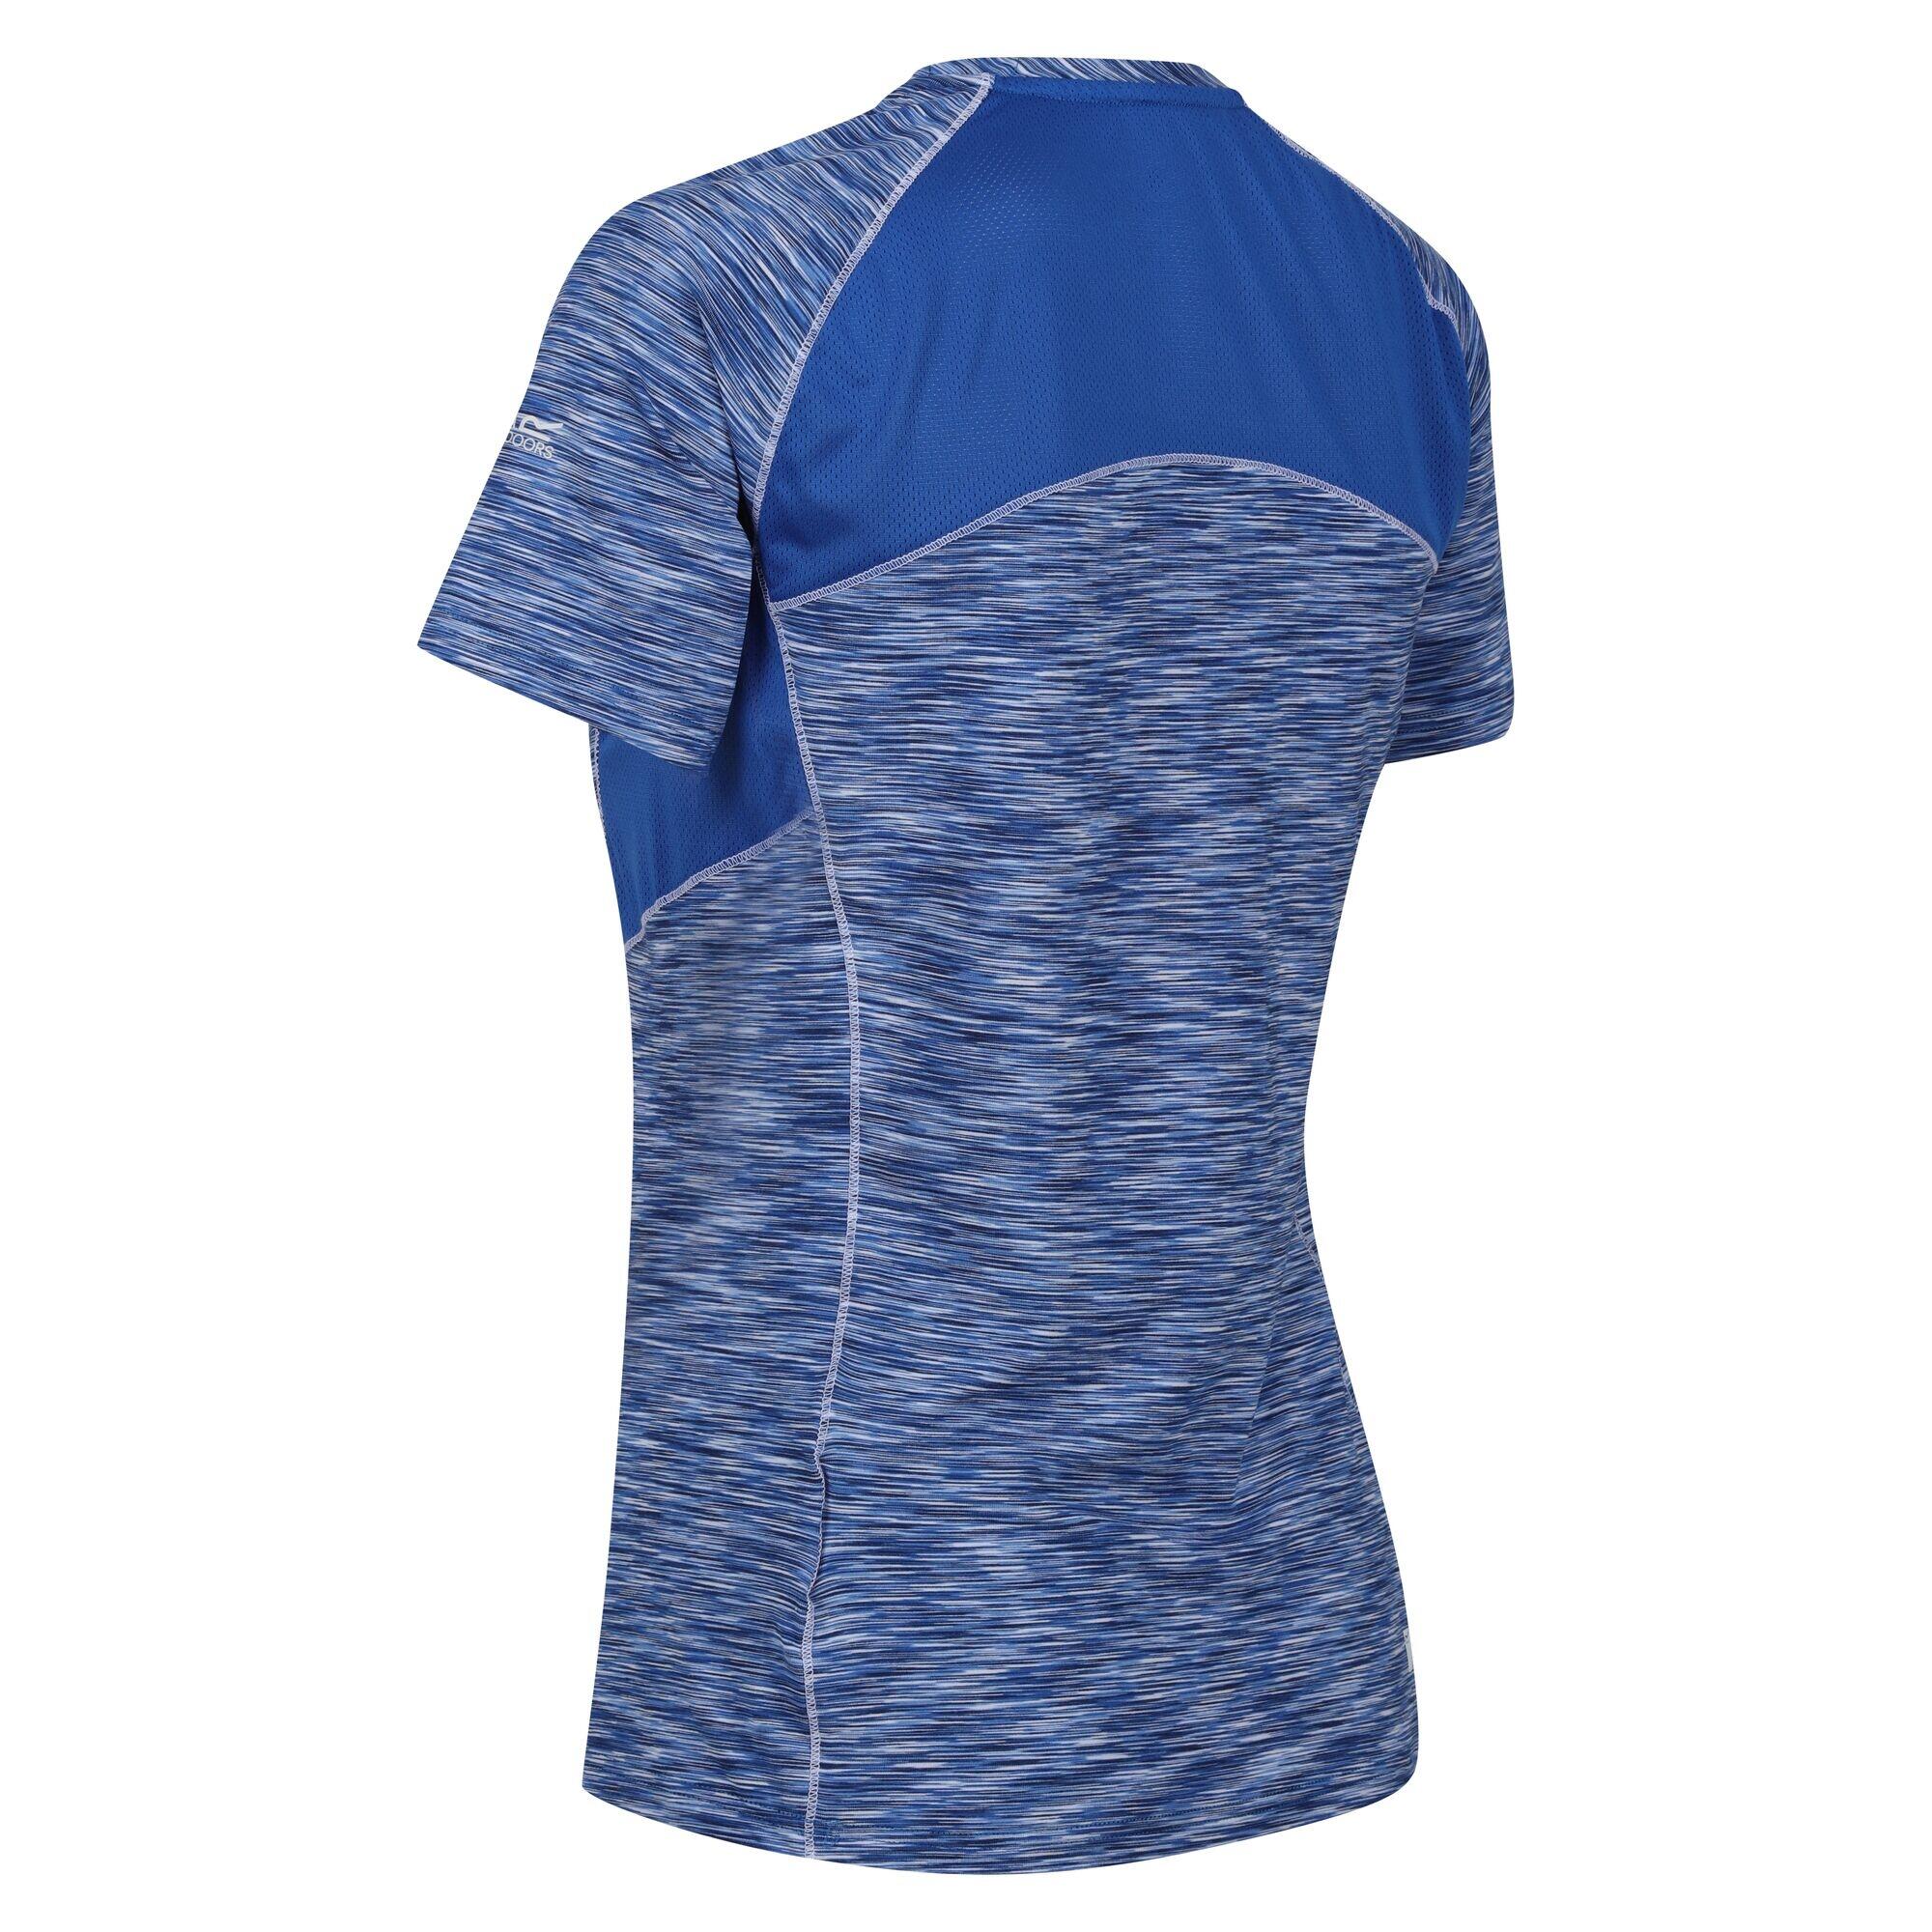 Womens/Ladies Laxley TShirt (Olympian Blue) 4/5